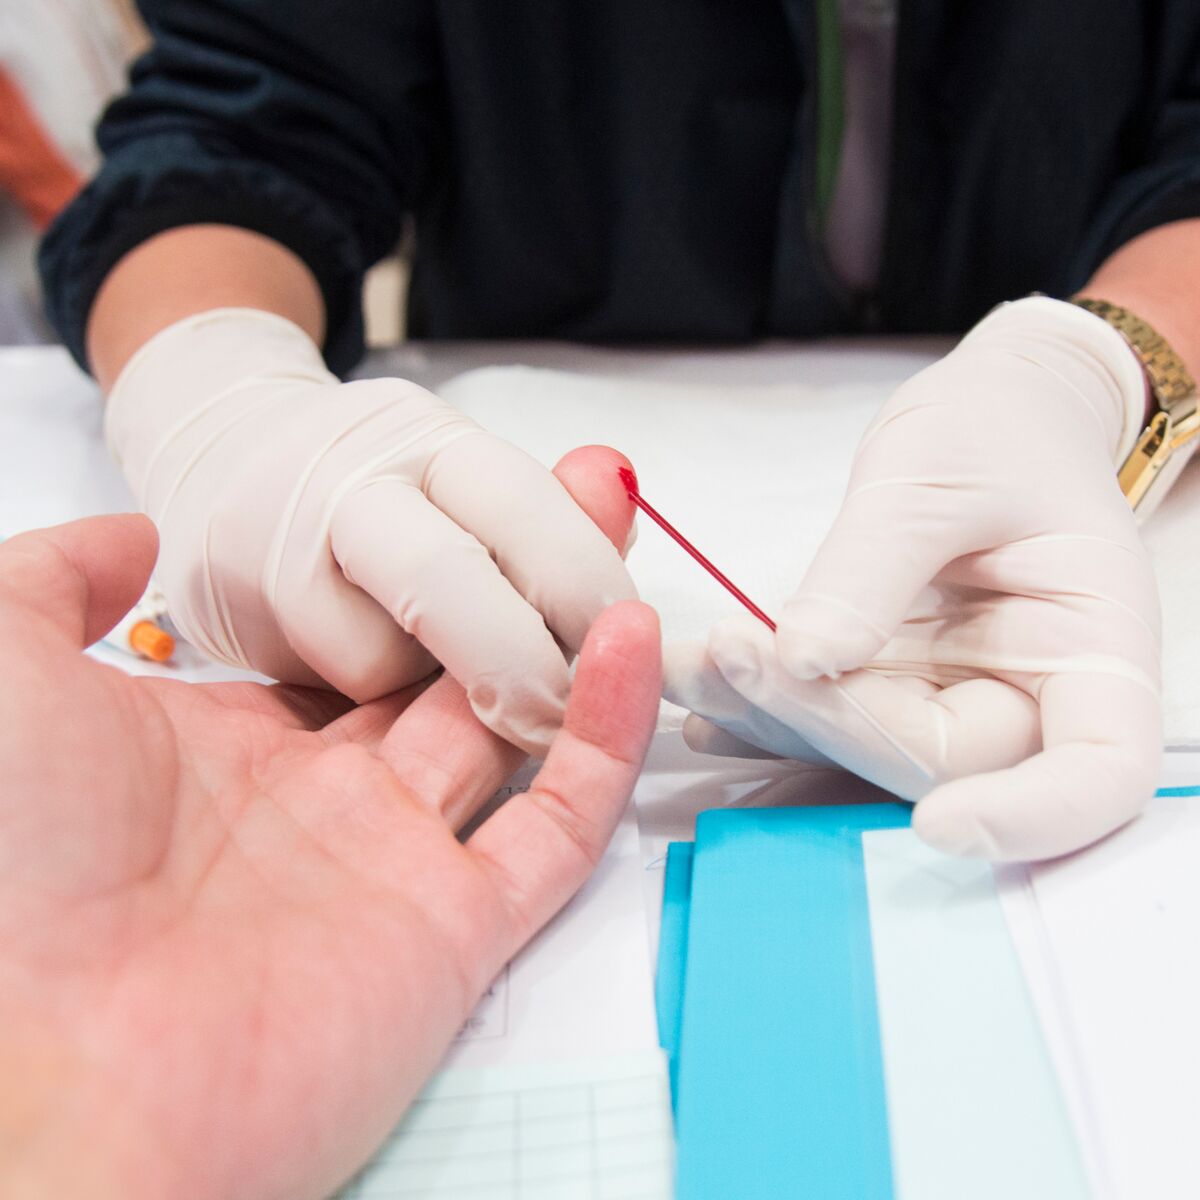 Autotest de dépistage du VIH (virus du SIDA)